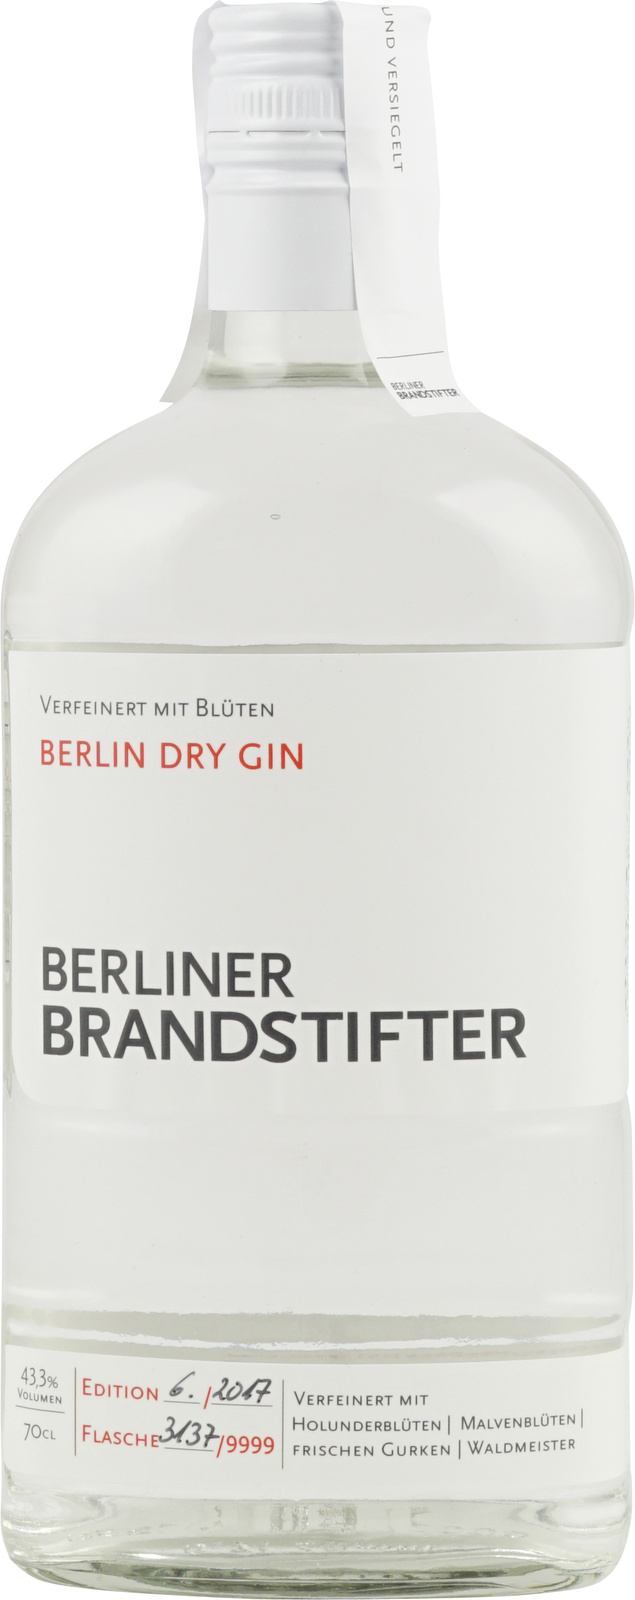 Berliner Brandstifter Berlin Dry Gin bei